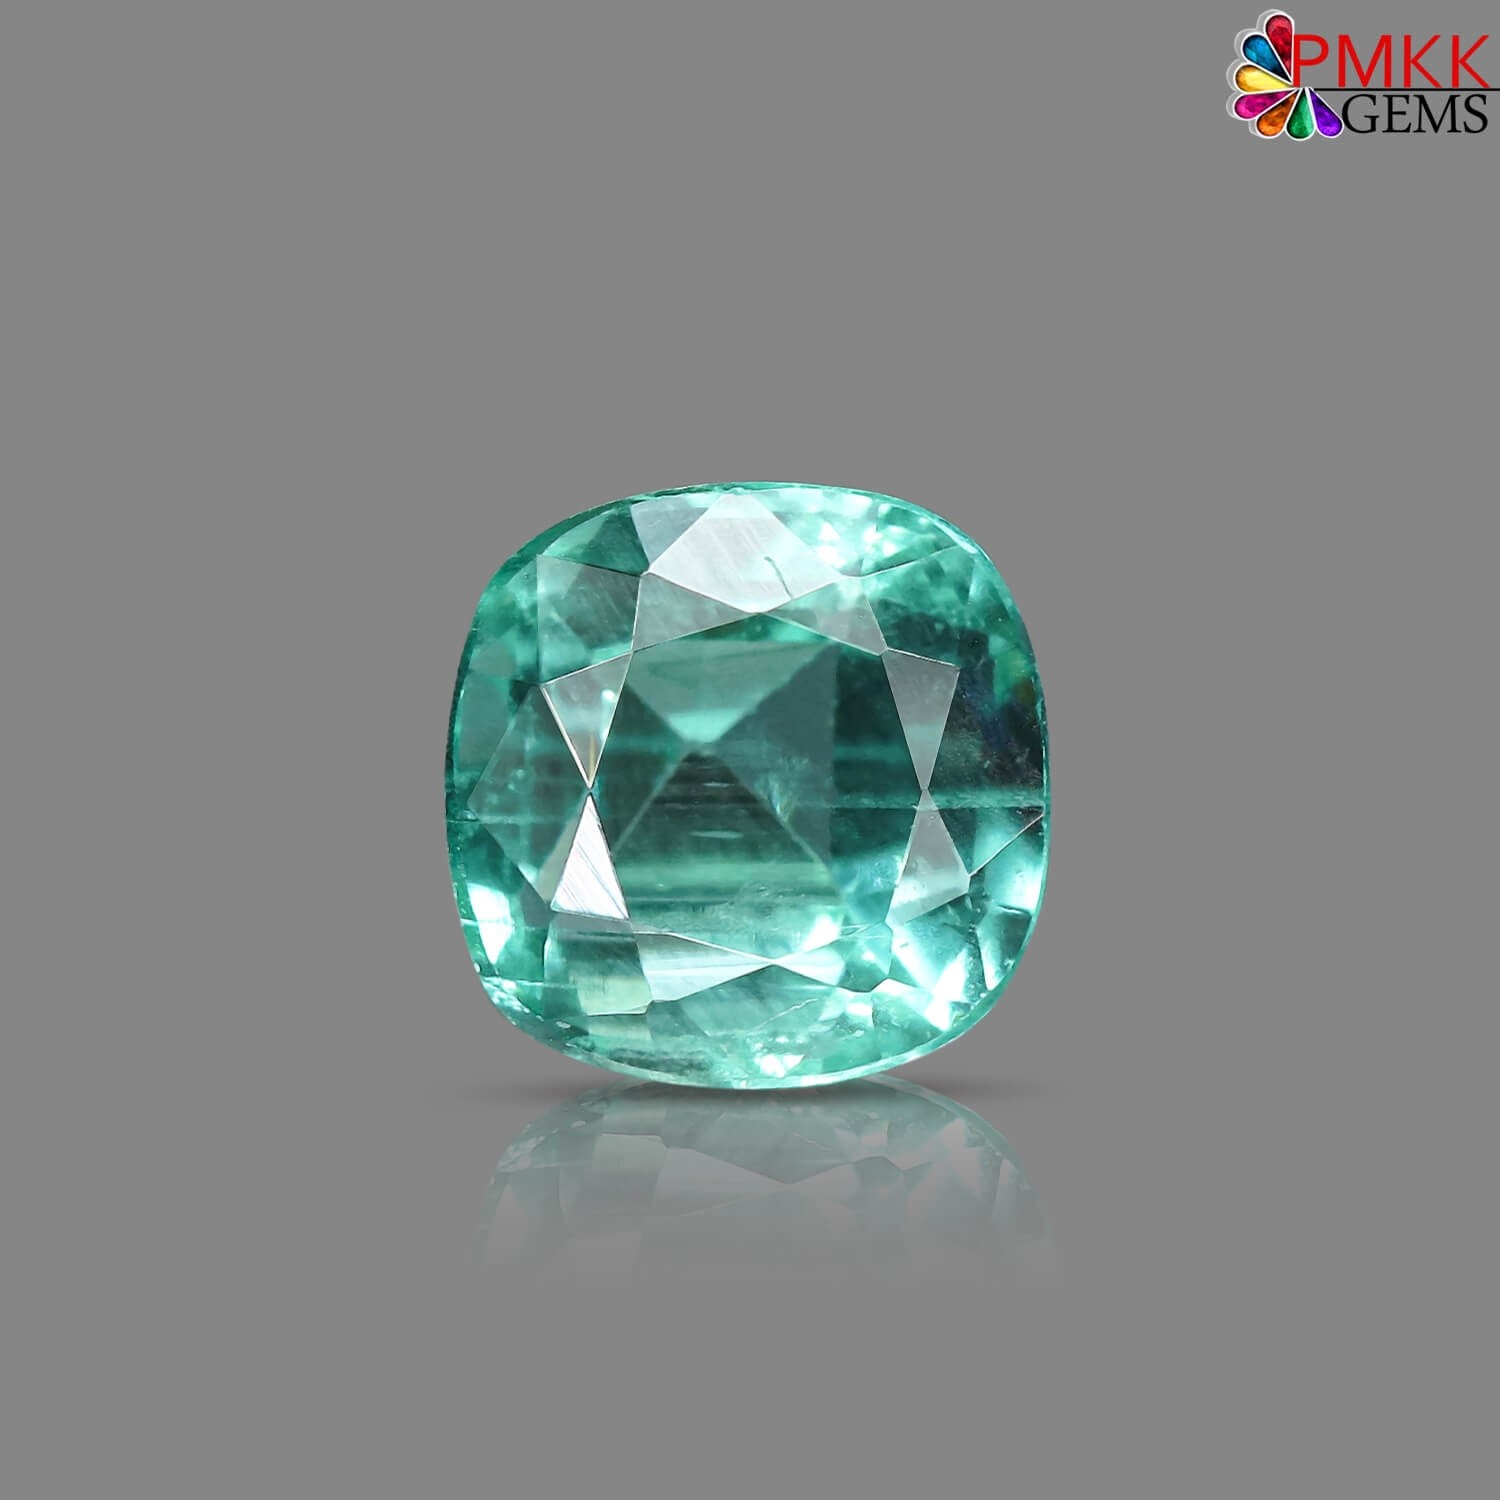 Panjshir Emerald 0.35 Carats